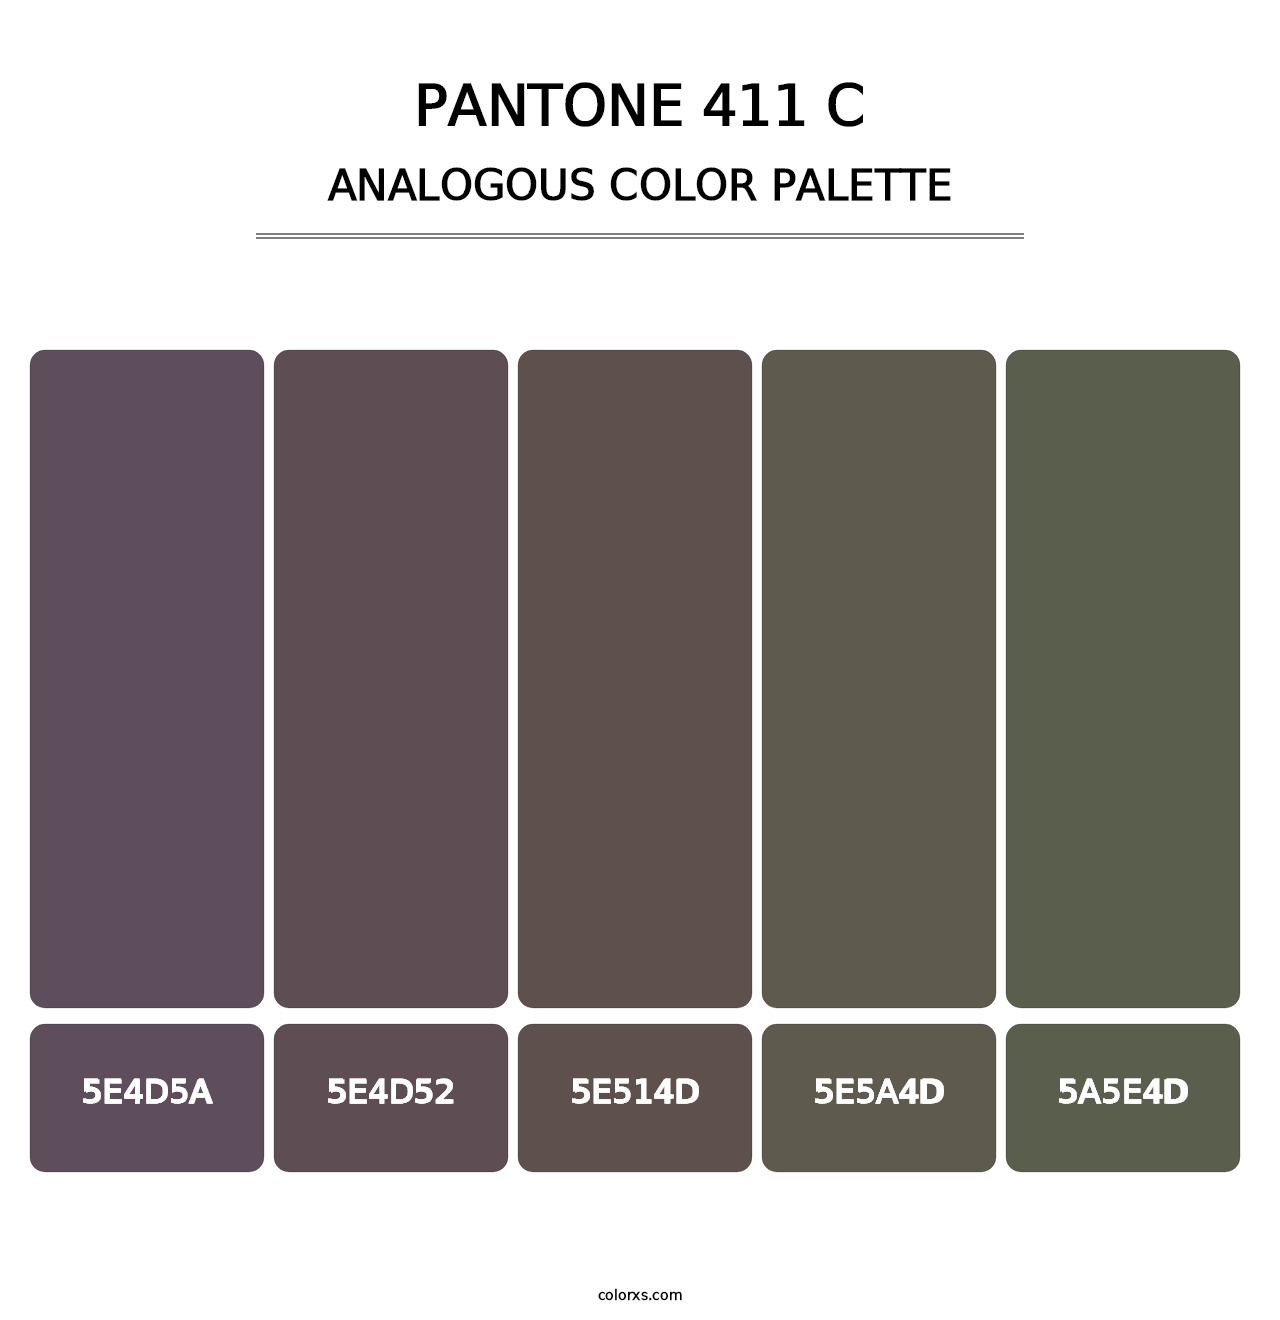 PANTONE 411 C - Analogous Color Palette